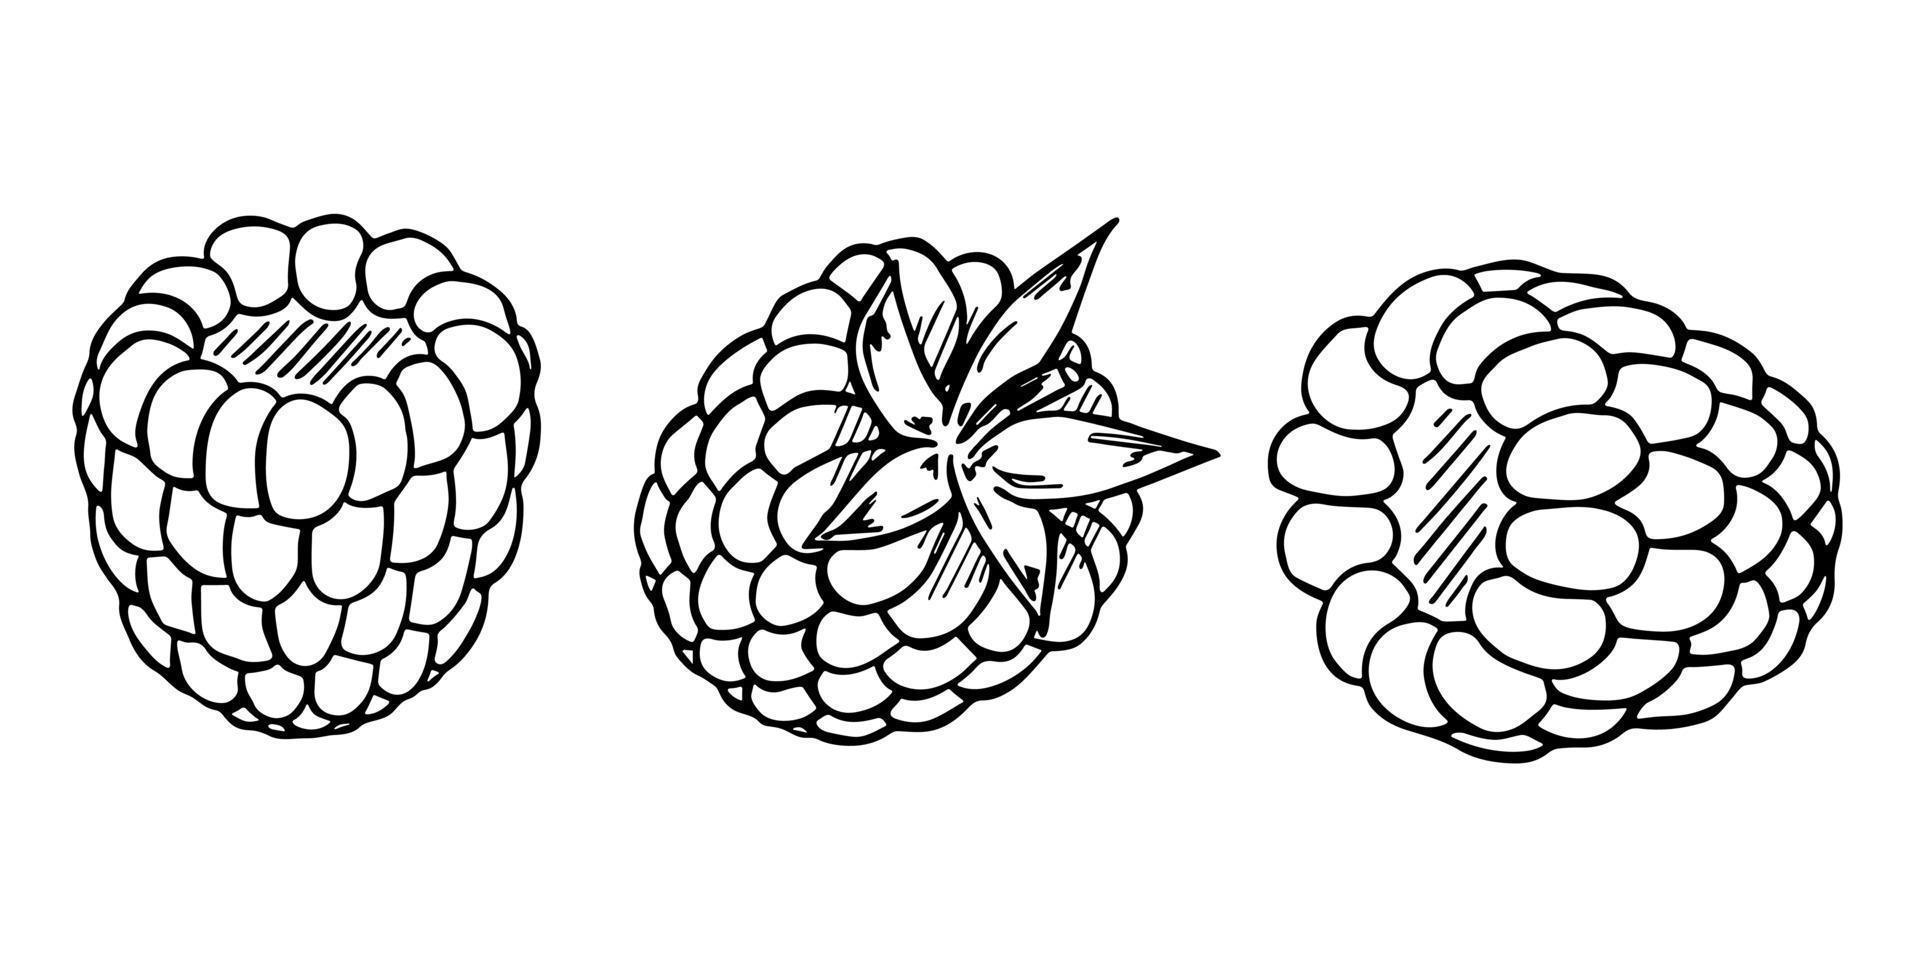 ensemble vectoriel de clipart framboise ou mûre. icône de baies dessinées à la main. illustration de fruits. pour l'impression, le web, le design, la décoration, le logo.